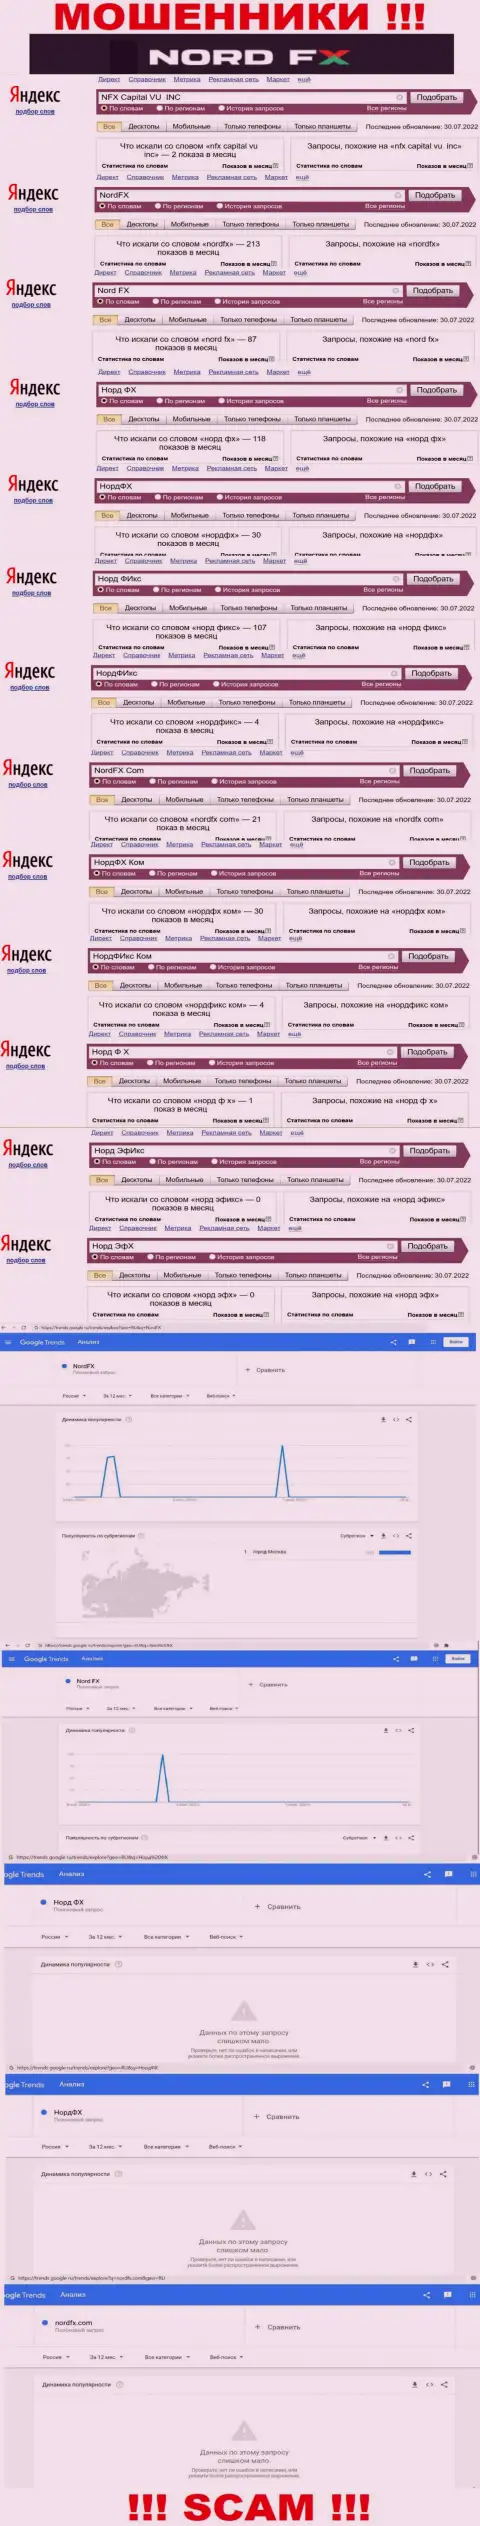 Количество онлайн-запросов в поисковиках всемирной сети Интернет по бренду аферистов NordFX